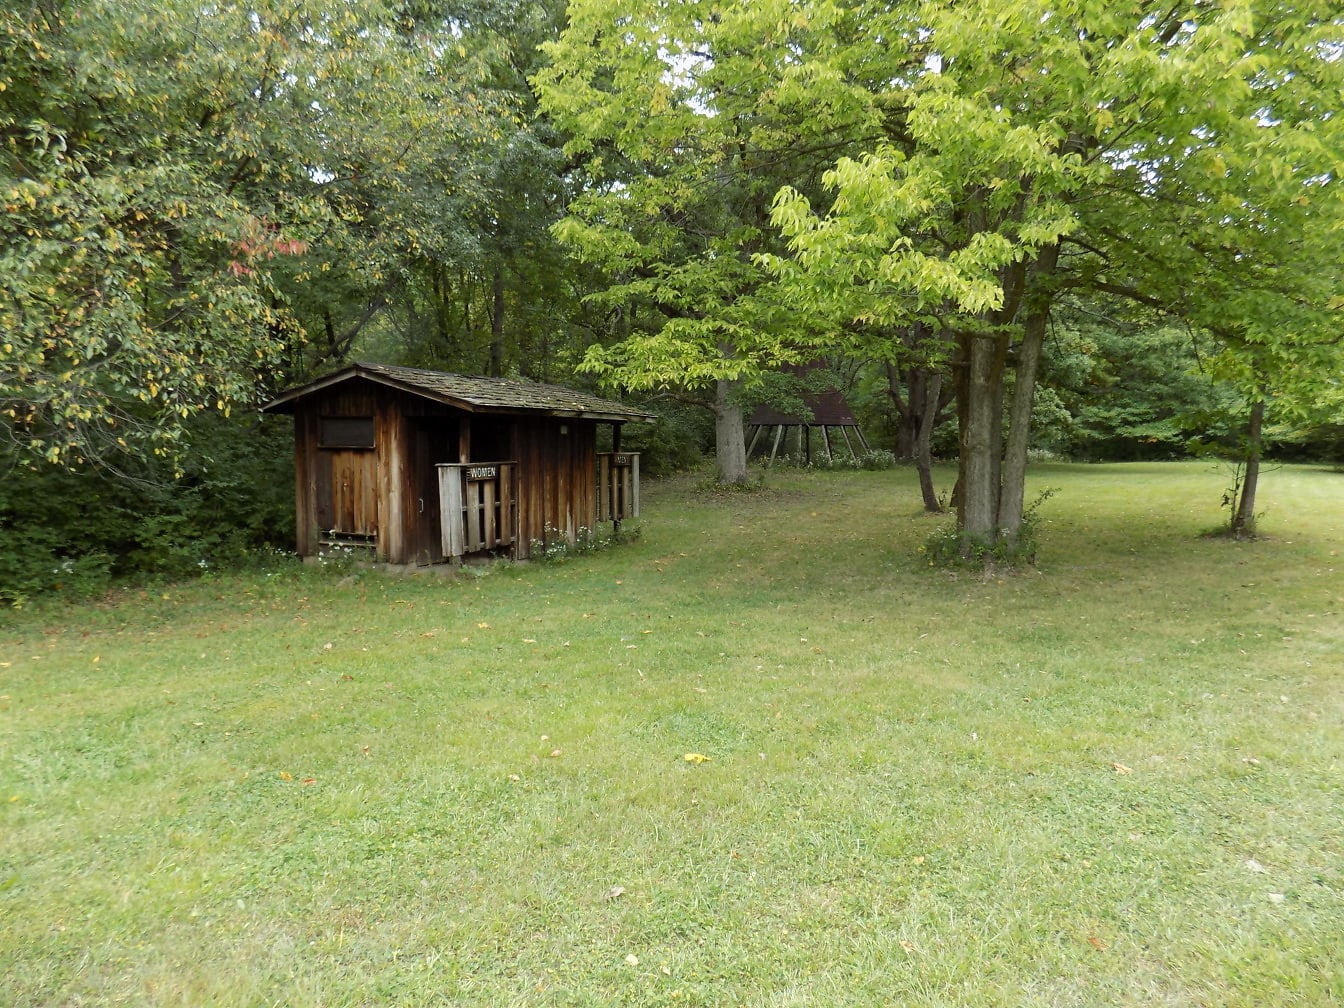 后院的老式木制谷仓厕所，有绿色草坪